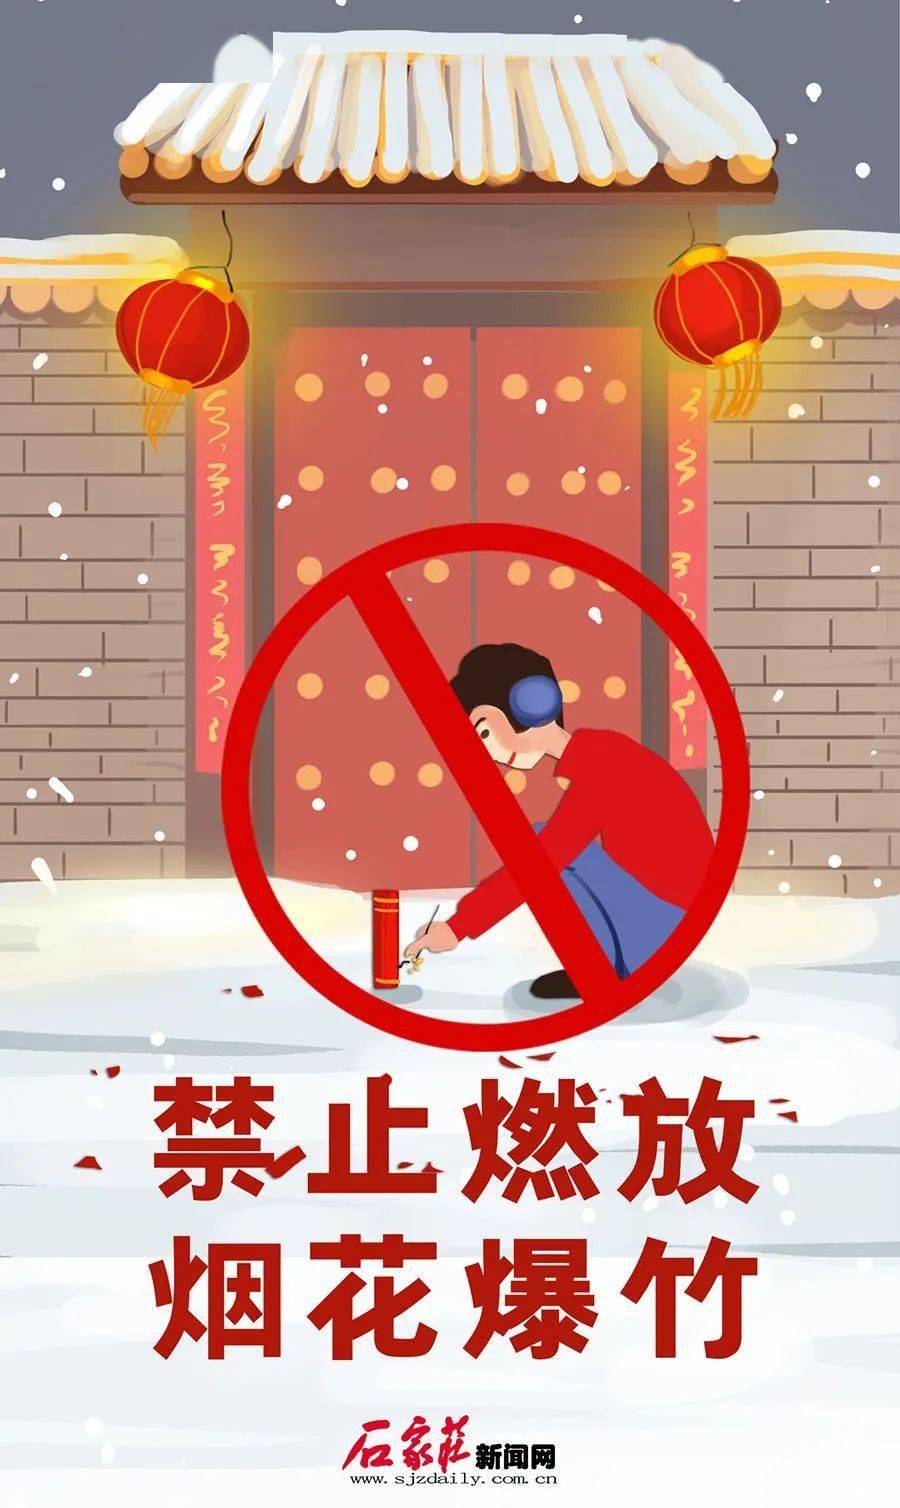 石家庄市区全年禁止燃放烟花爆竹宣传海报